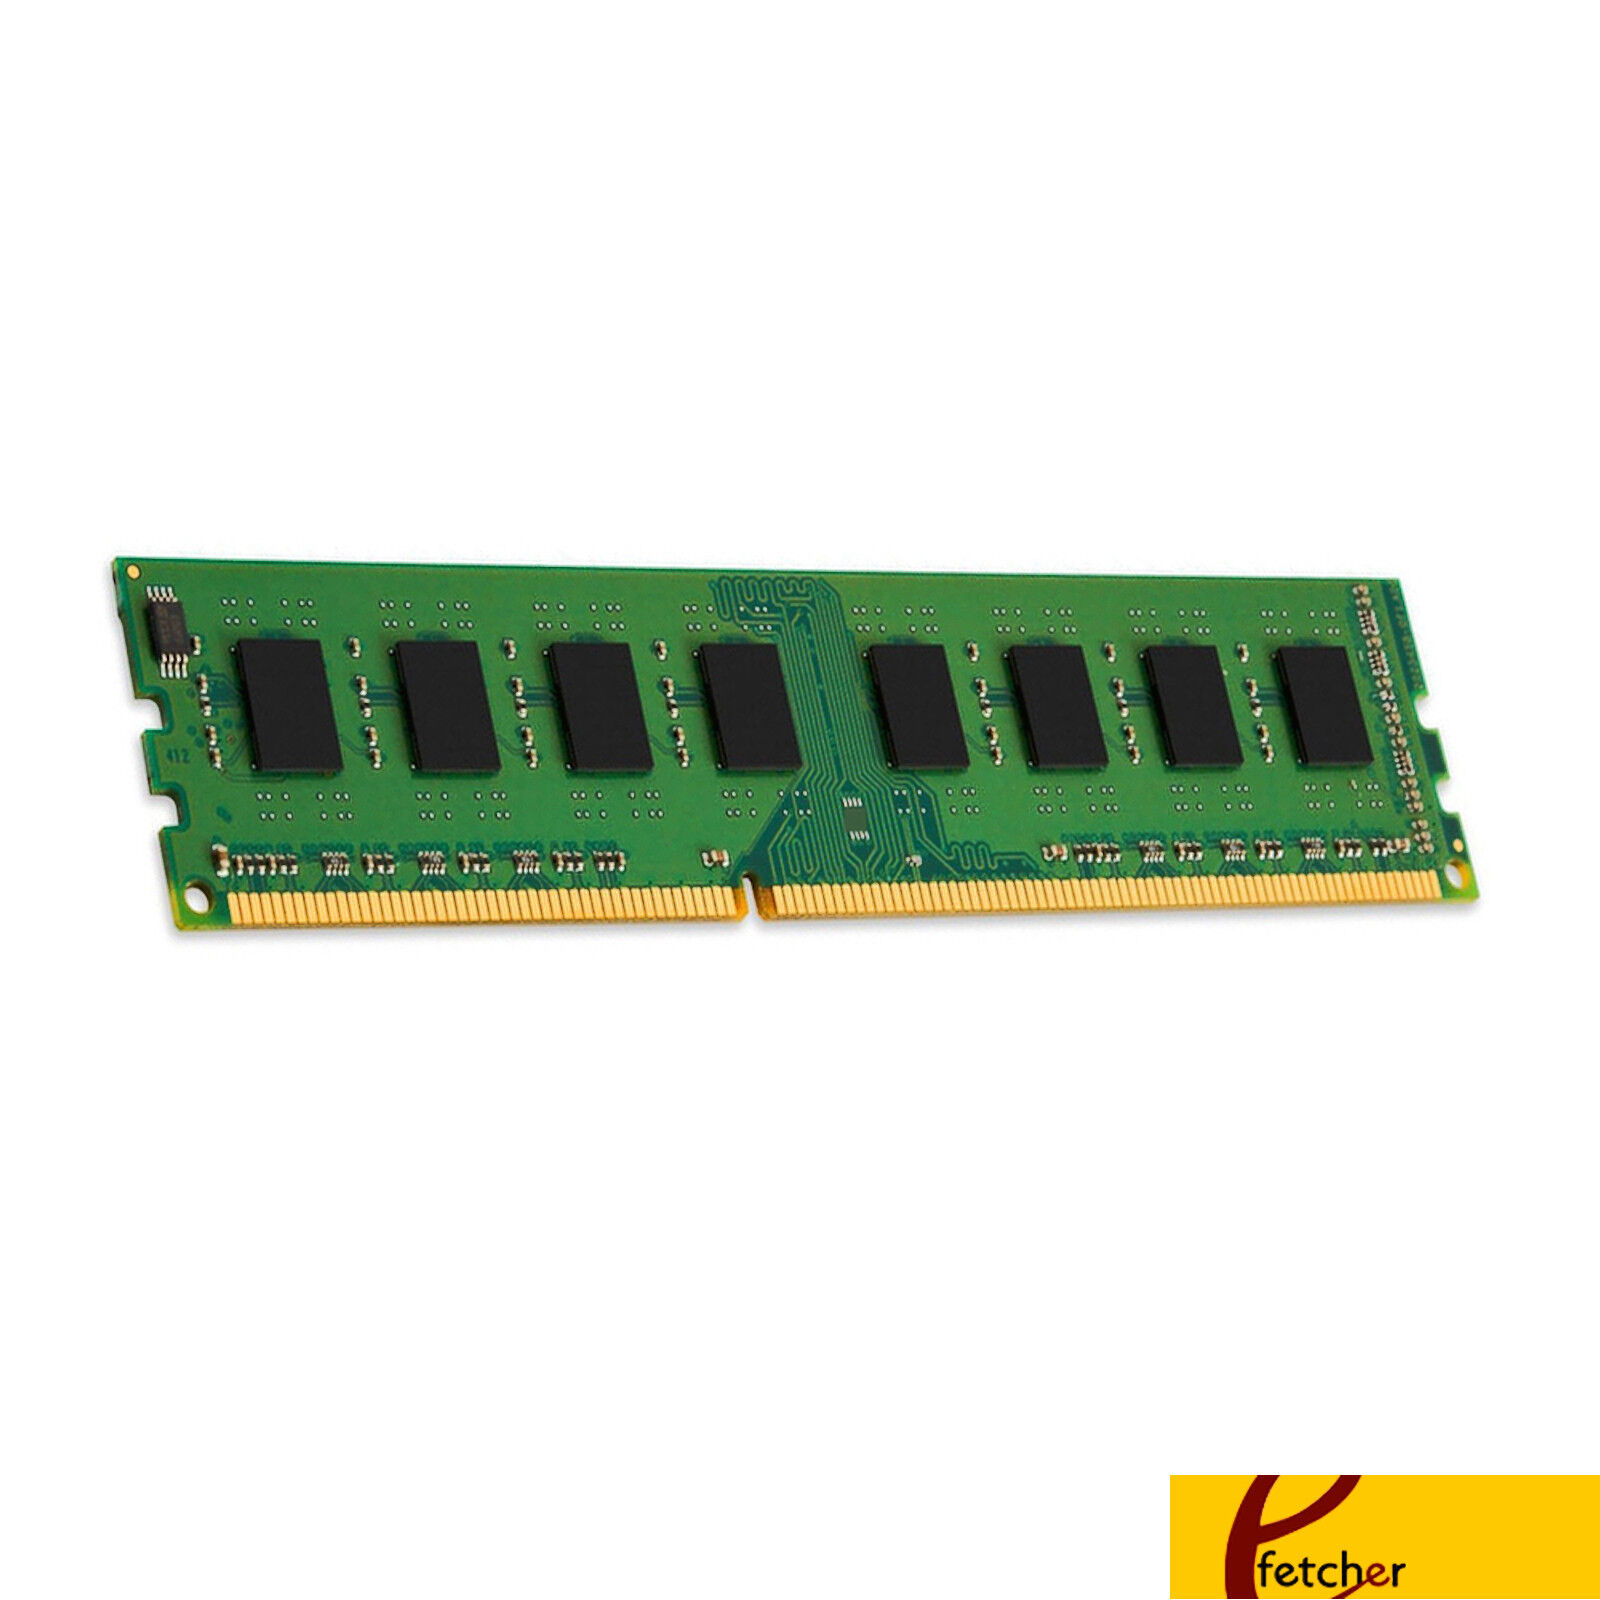 24GB(6X 4GB) DDR3 ECC UDIMM Memory Lenovo ThinkStation S20 (X58) 4105 4157 4217